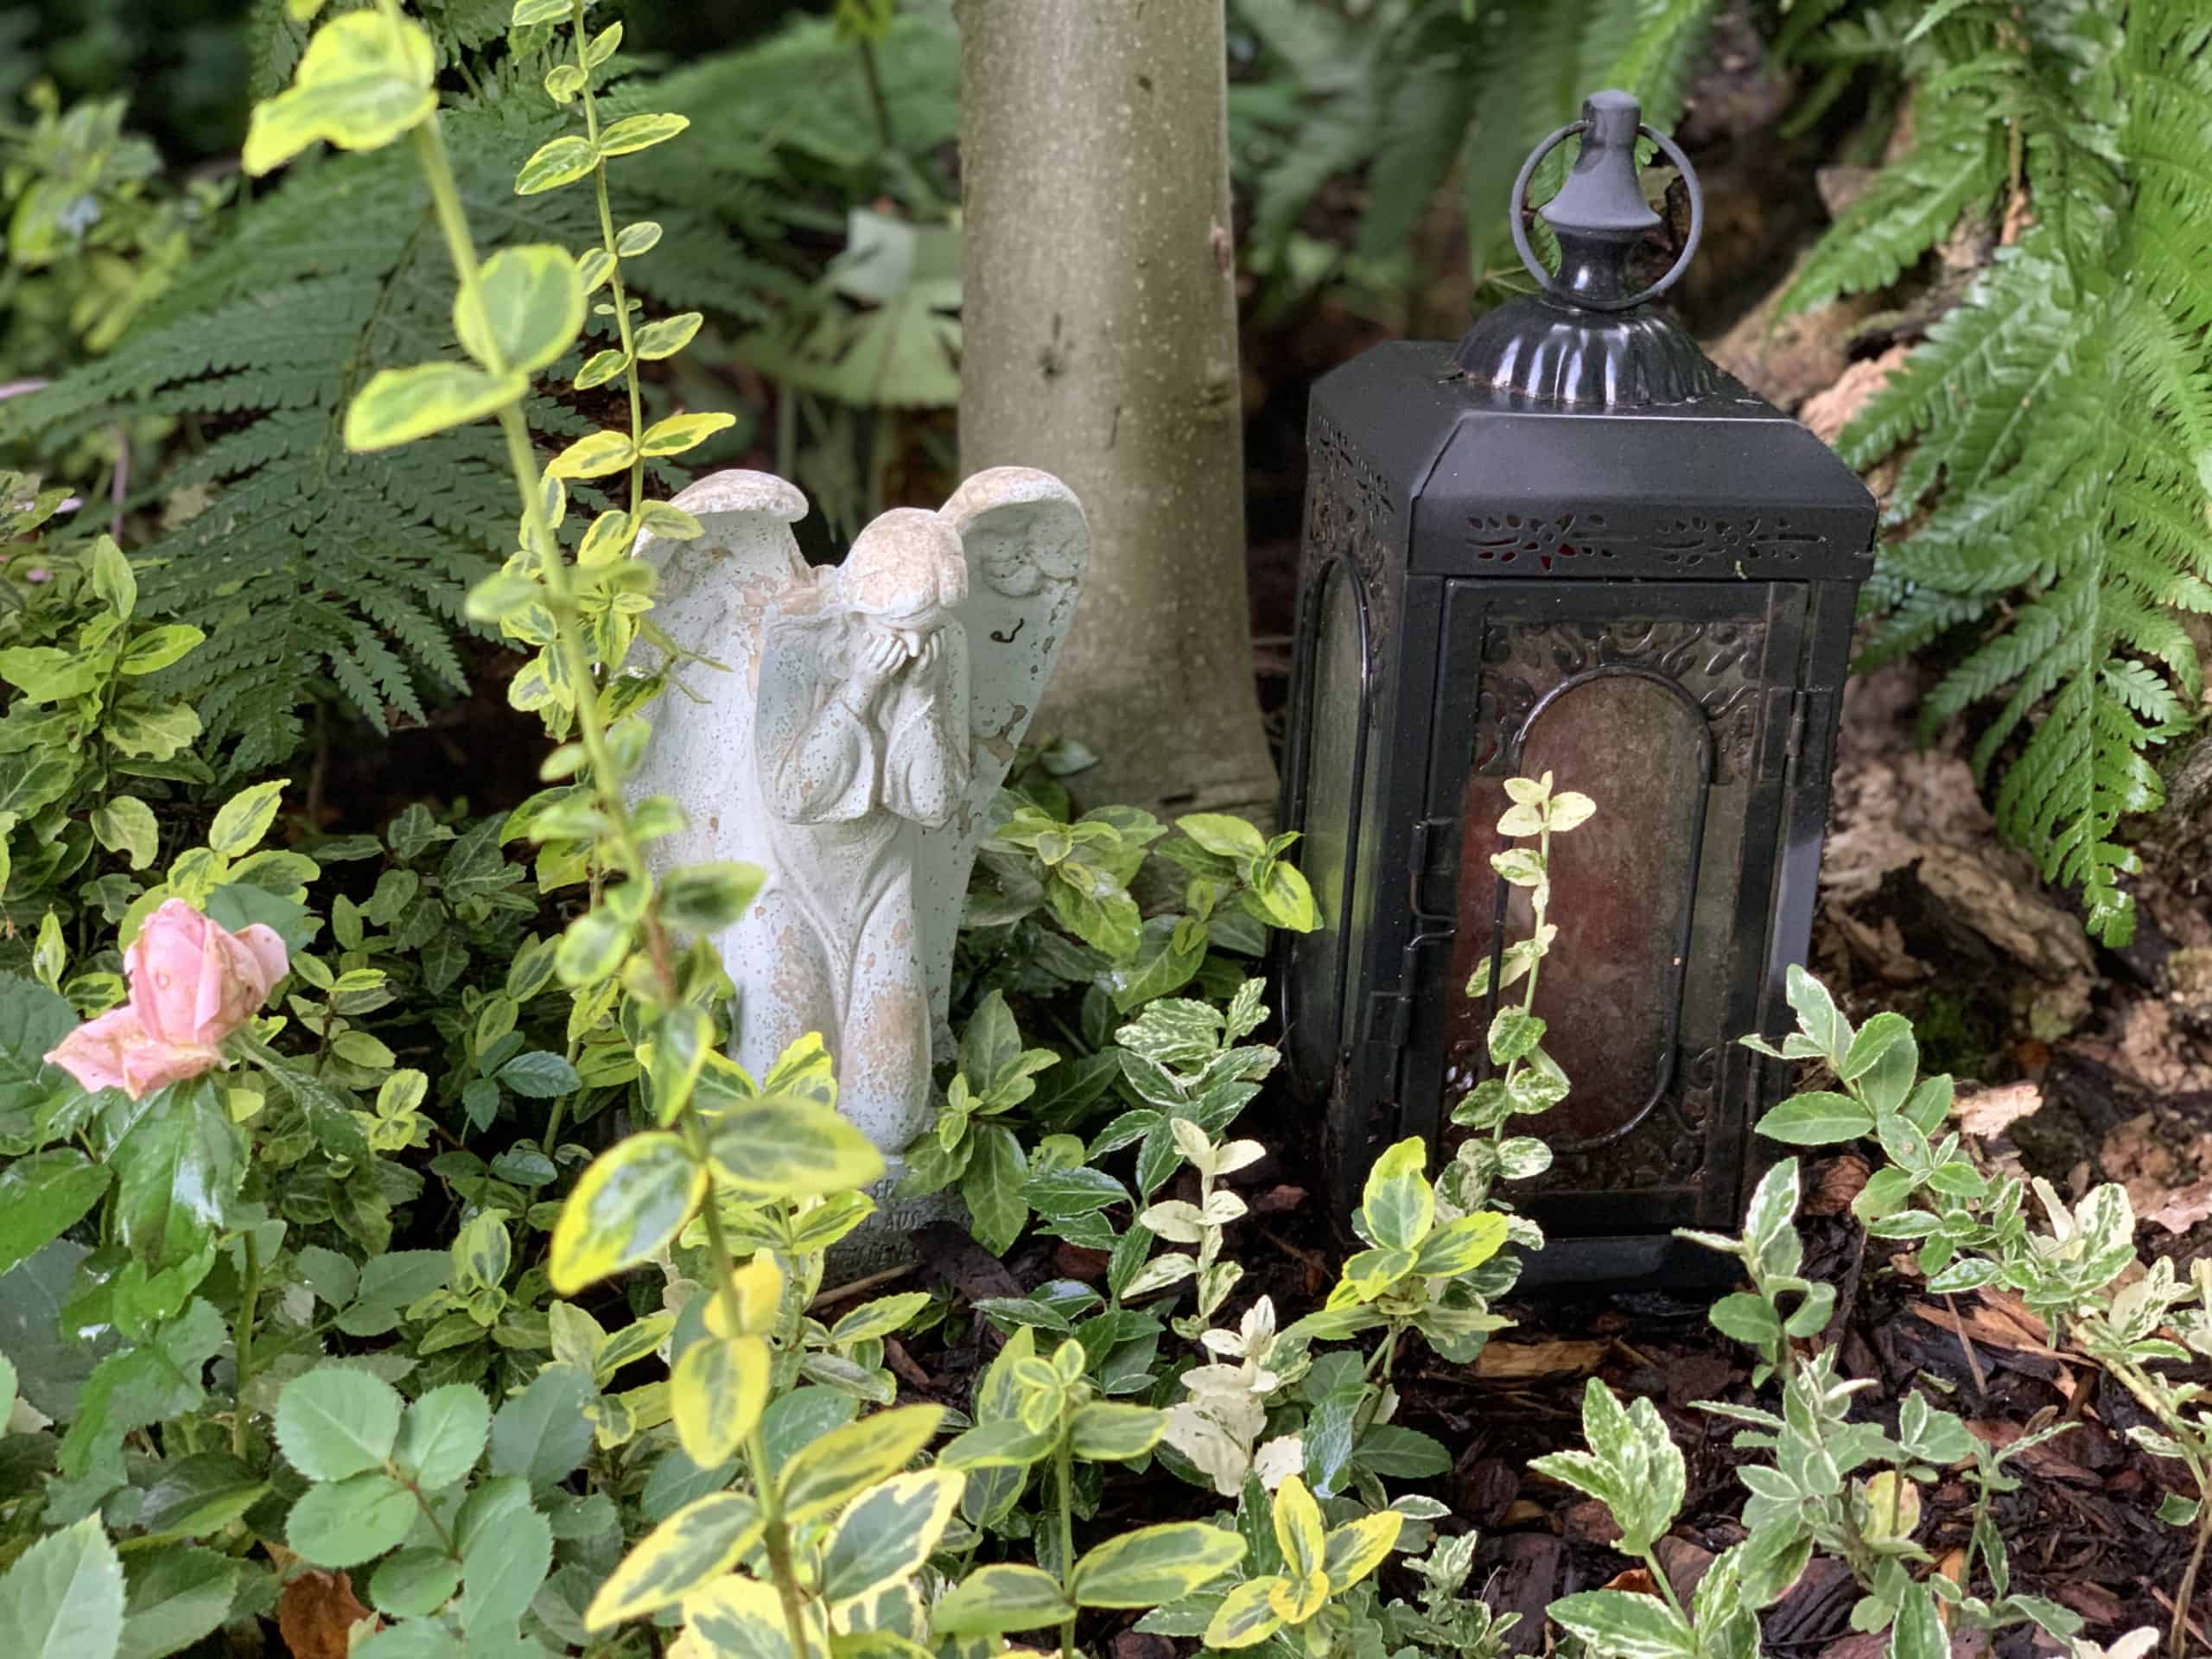 Man sieht eine schwarze Laterne mit einer roten Kerze darin und daneben ein weinender Engel aus Stein. Das alles ist umgeben von grünen Pflanzen.